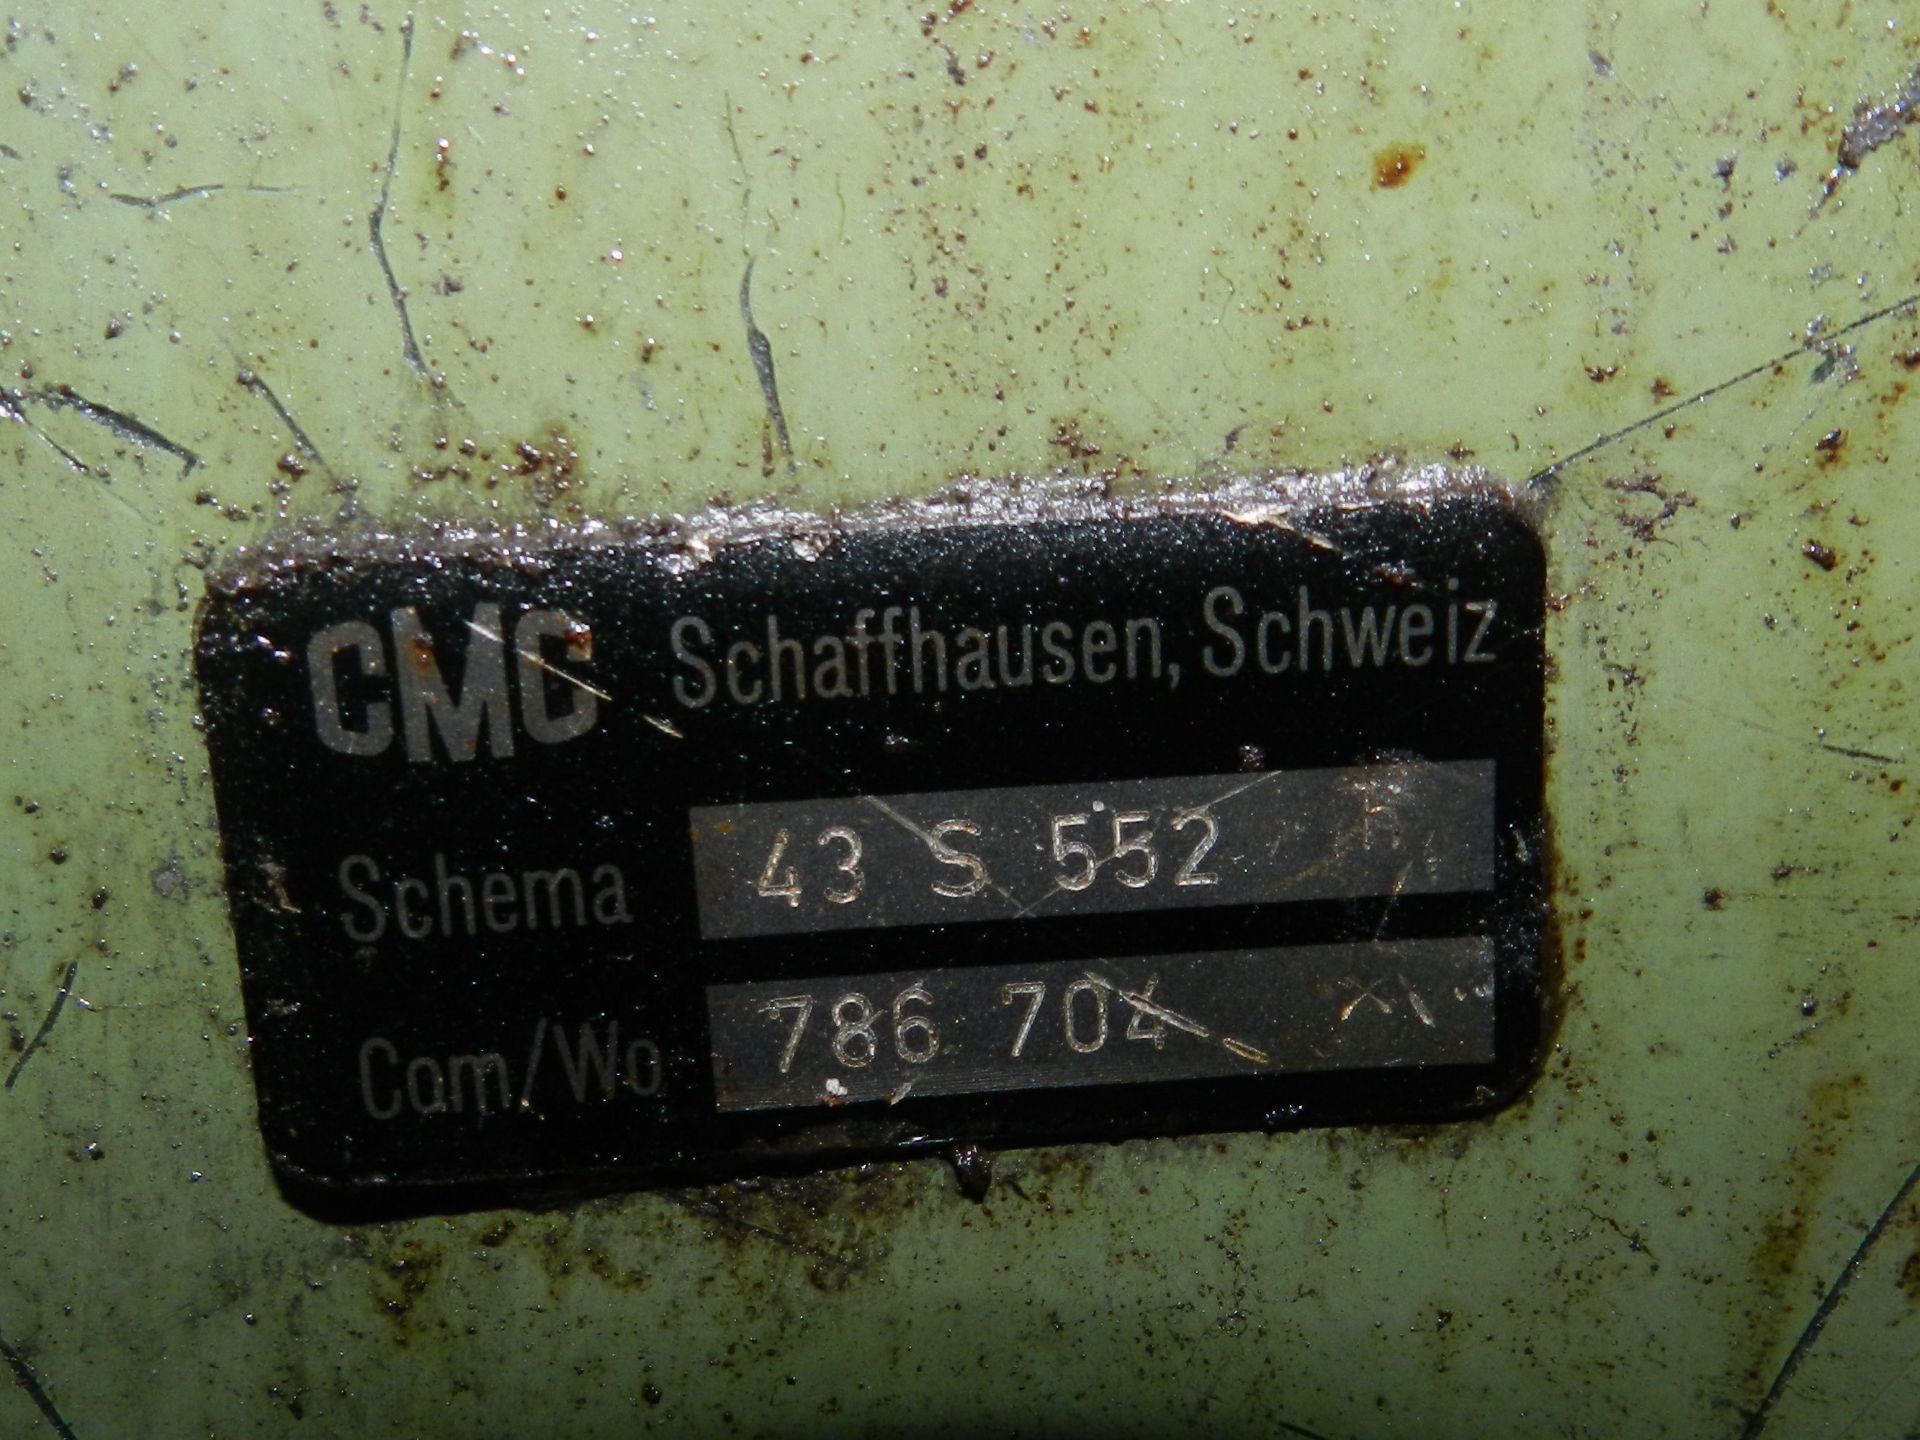 Tschudin HTG 402 Cylindrical Grinder - Image 3 of 11